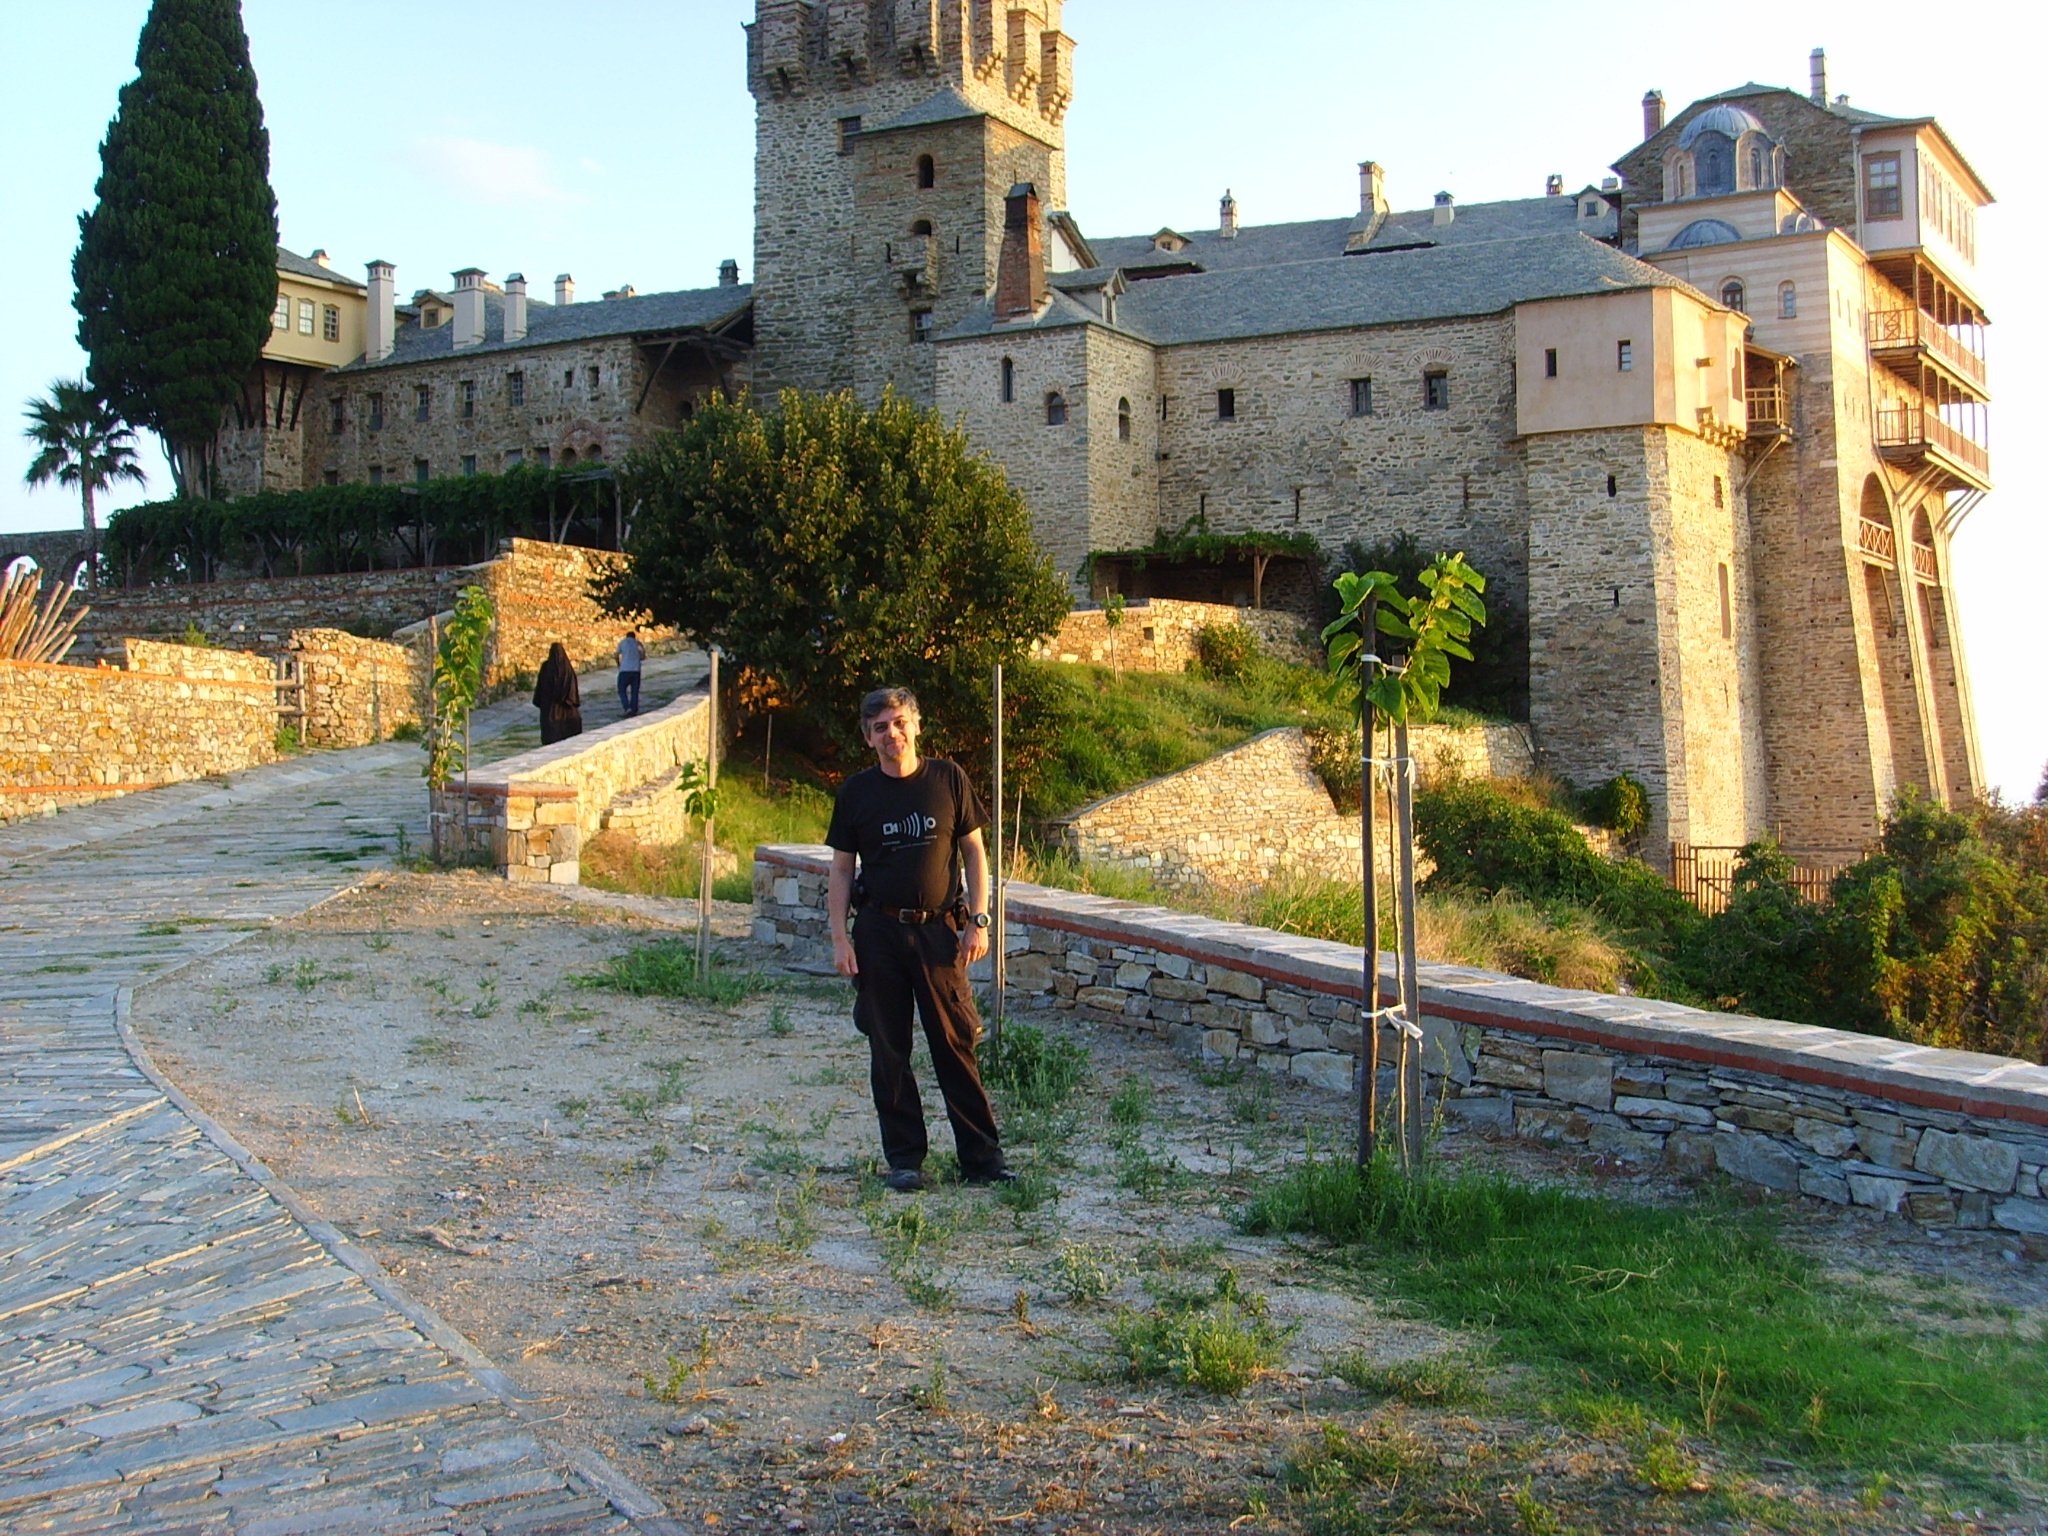 Research on Mount Athos (Stavronikita Monastery)